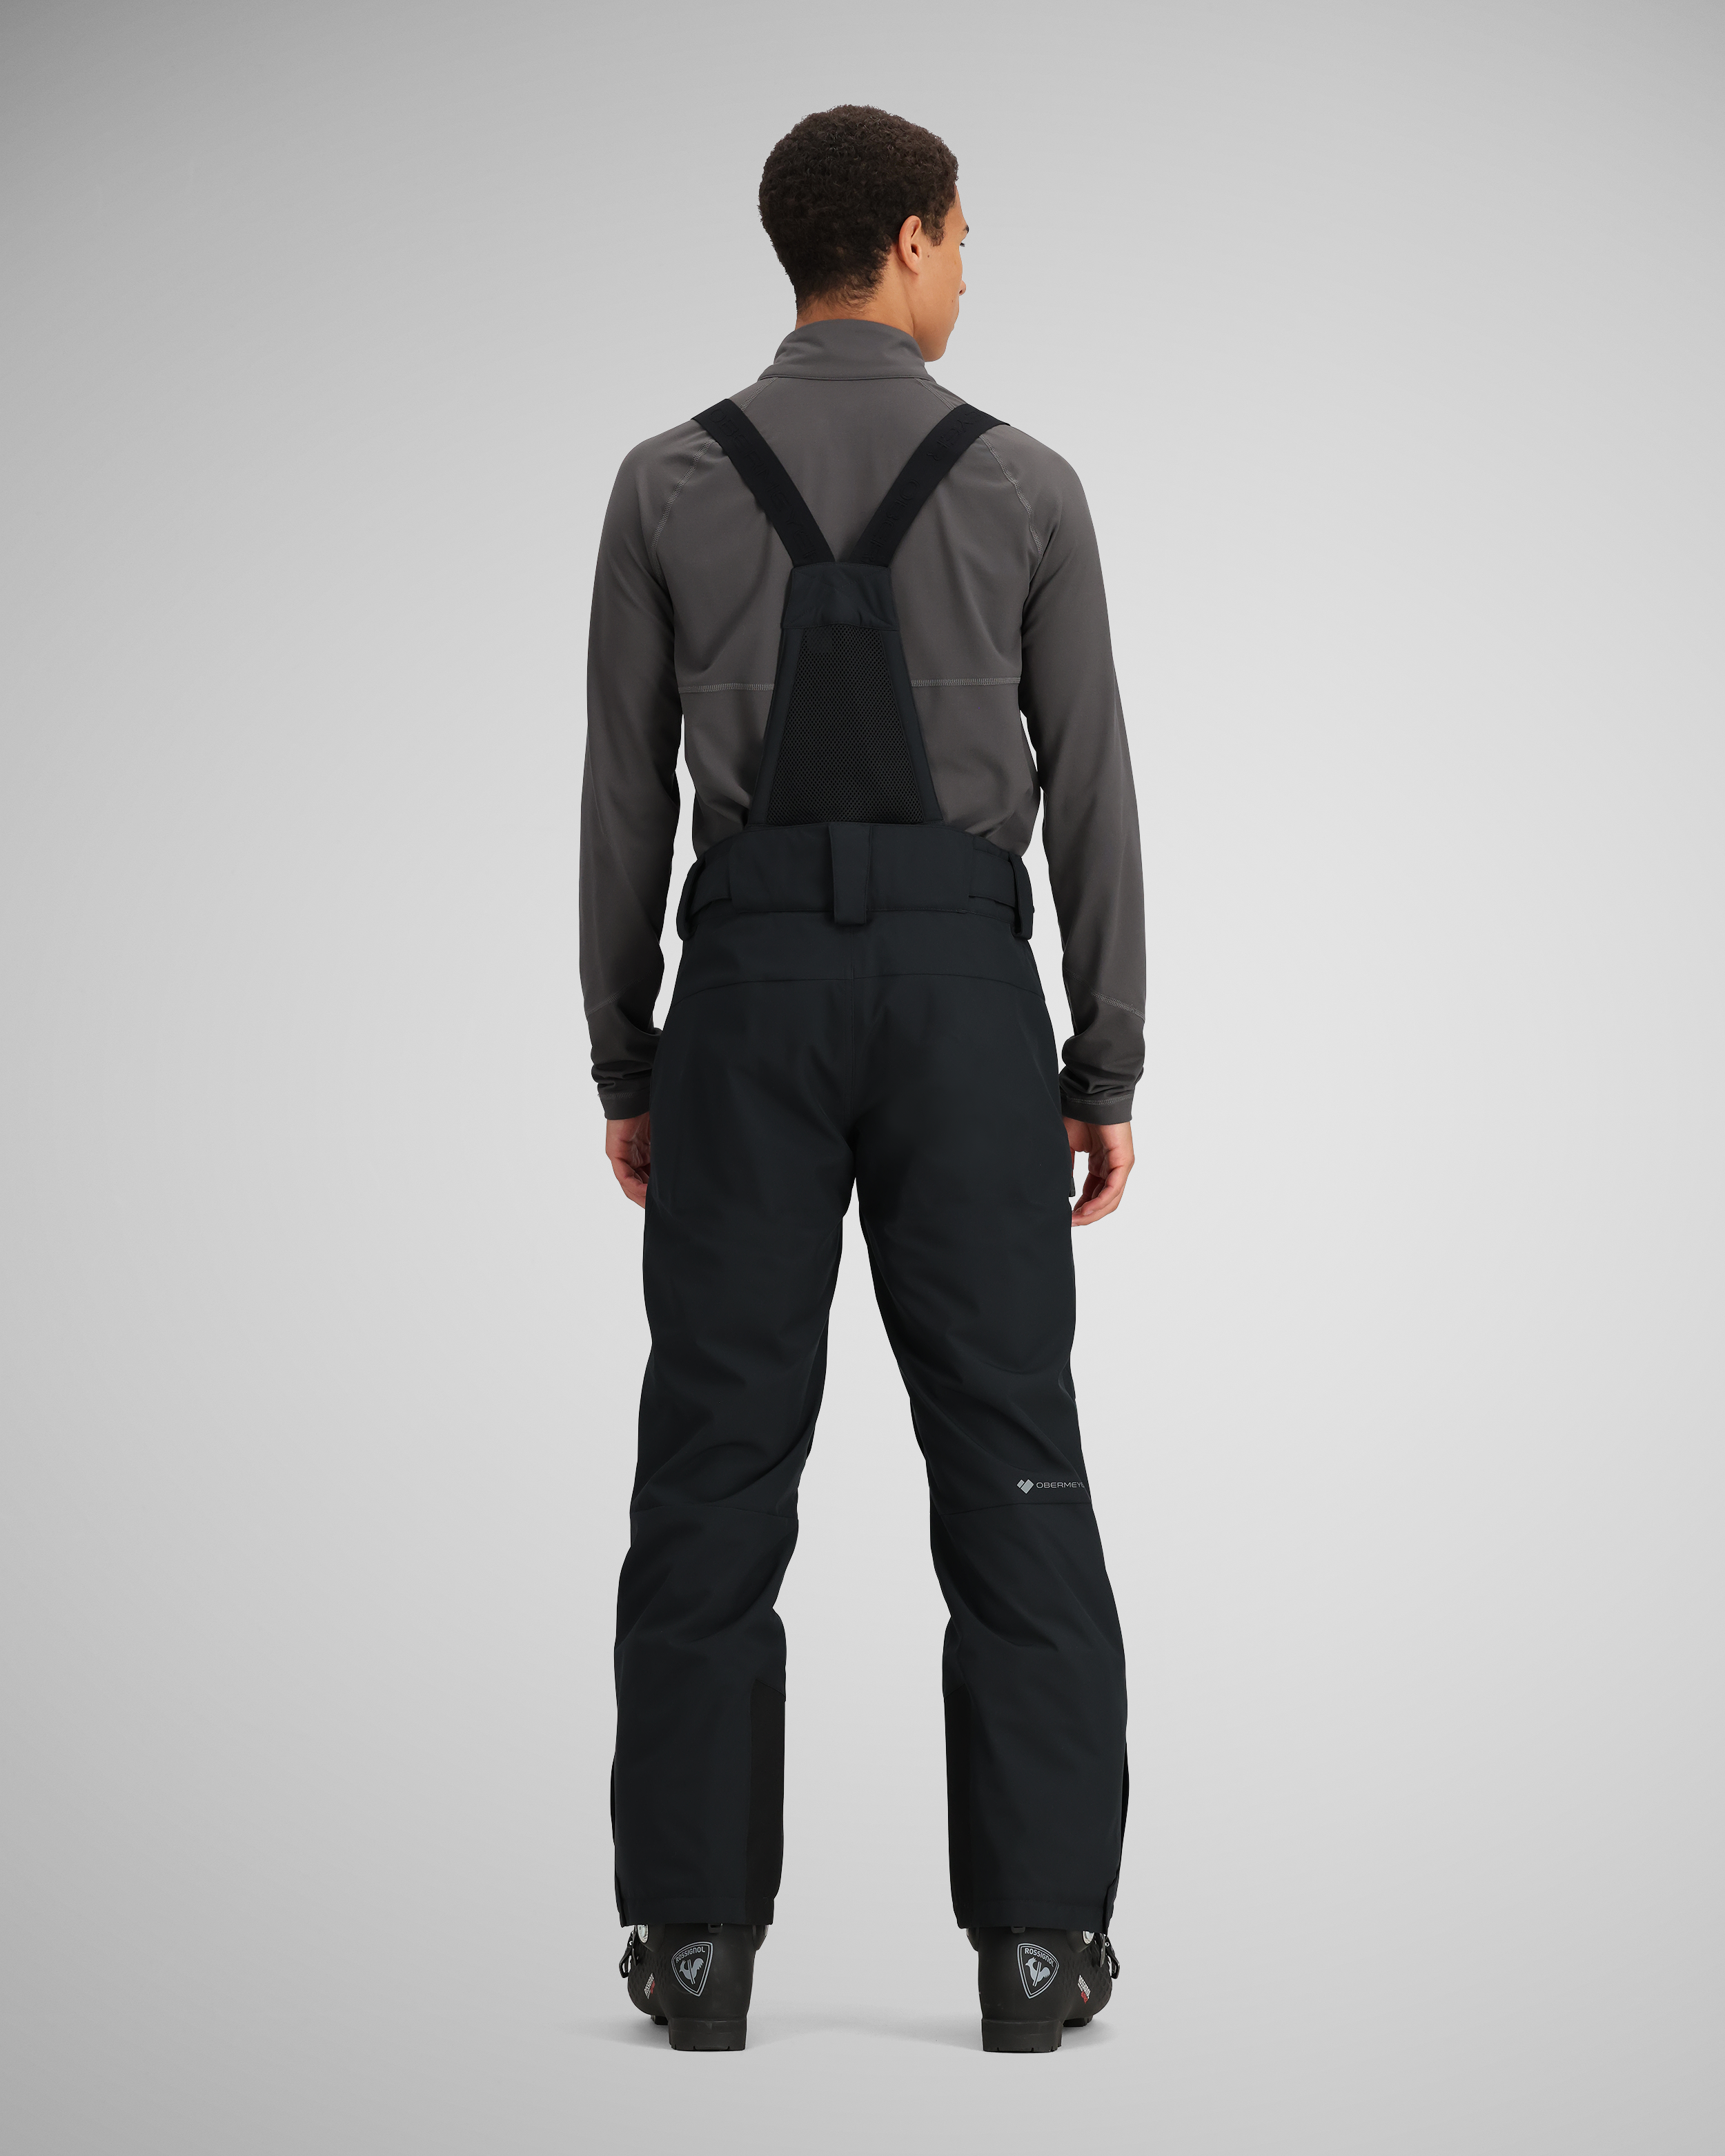 Premium Tan Regular Fit Suspender Ready Formal & Business Pants